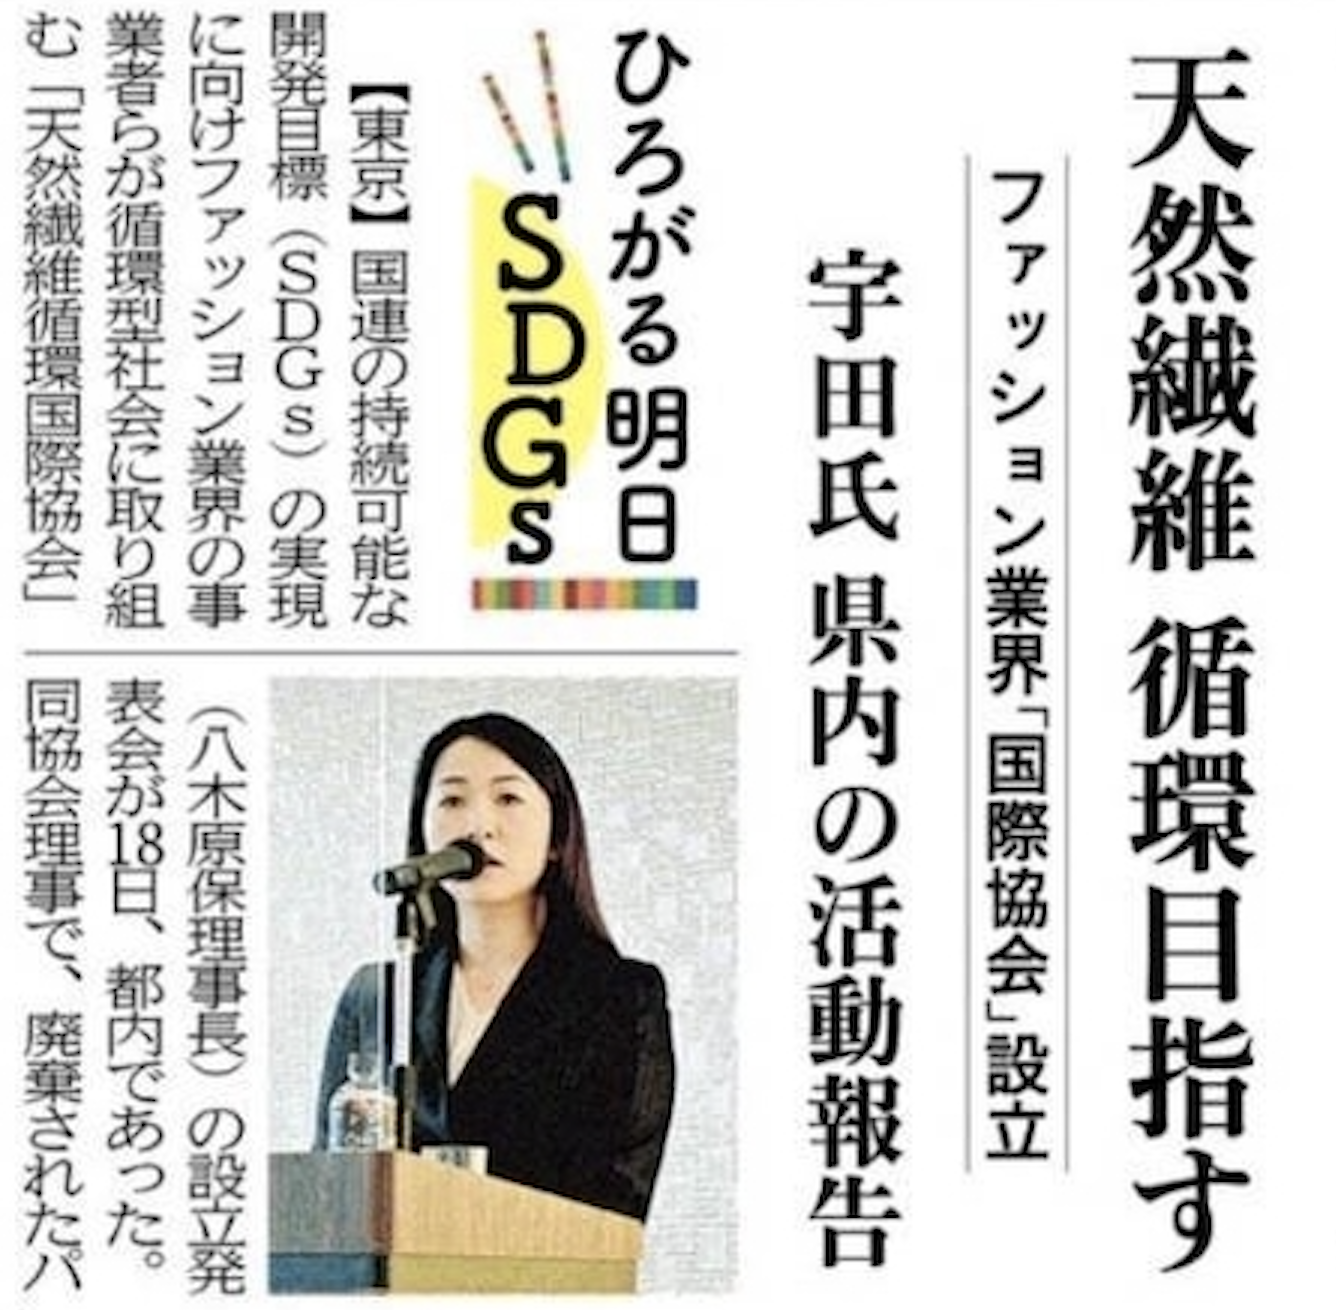 沖縄タイムスに「天然繊維循環国際協会」設立の記事が掲載されました